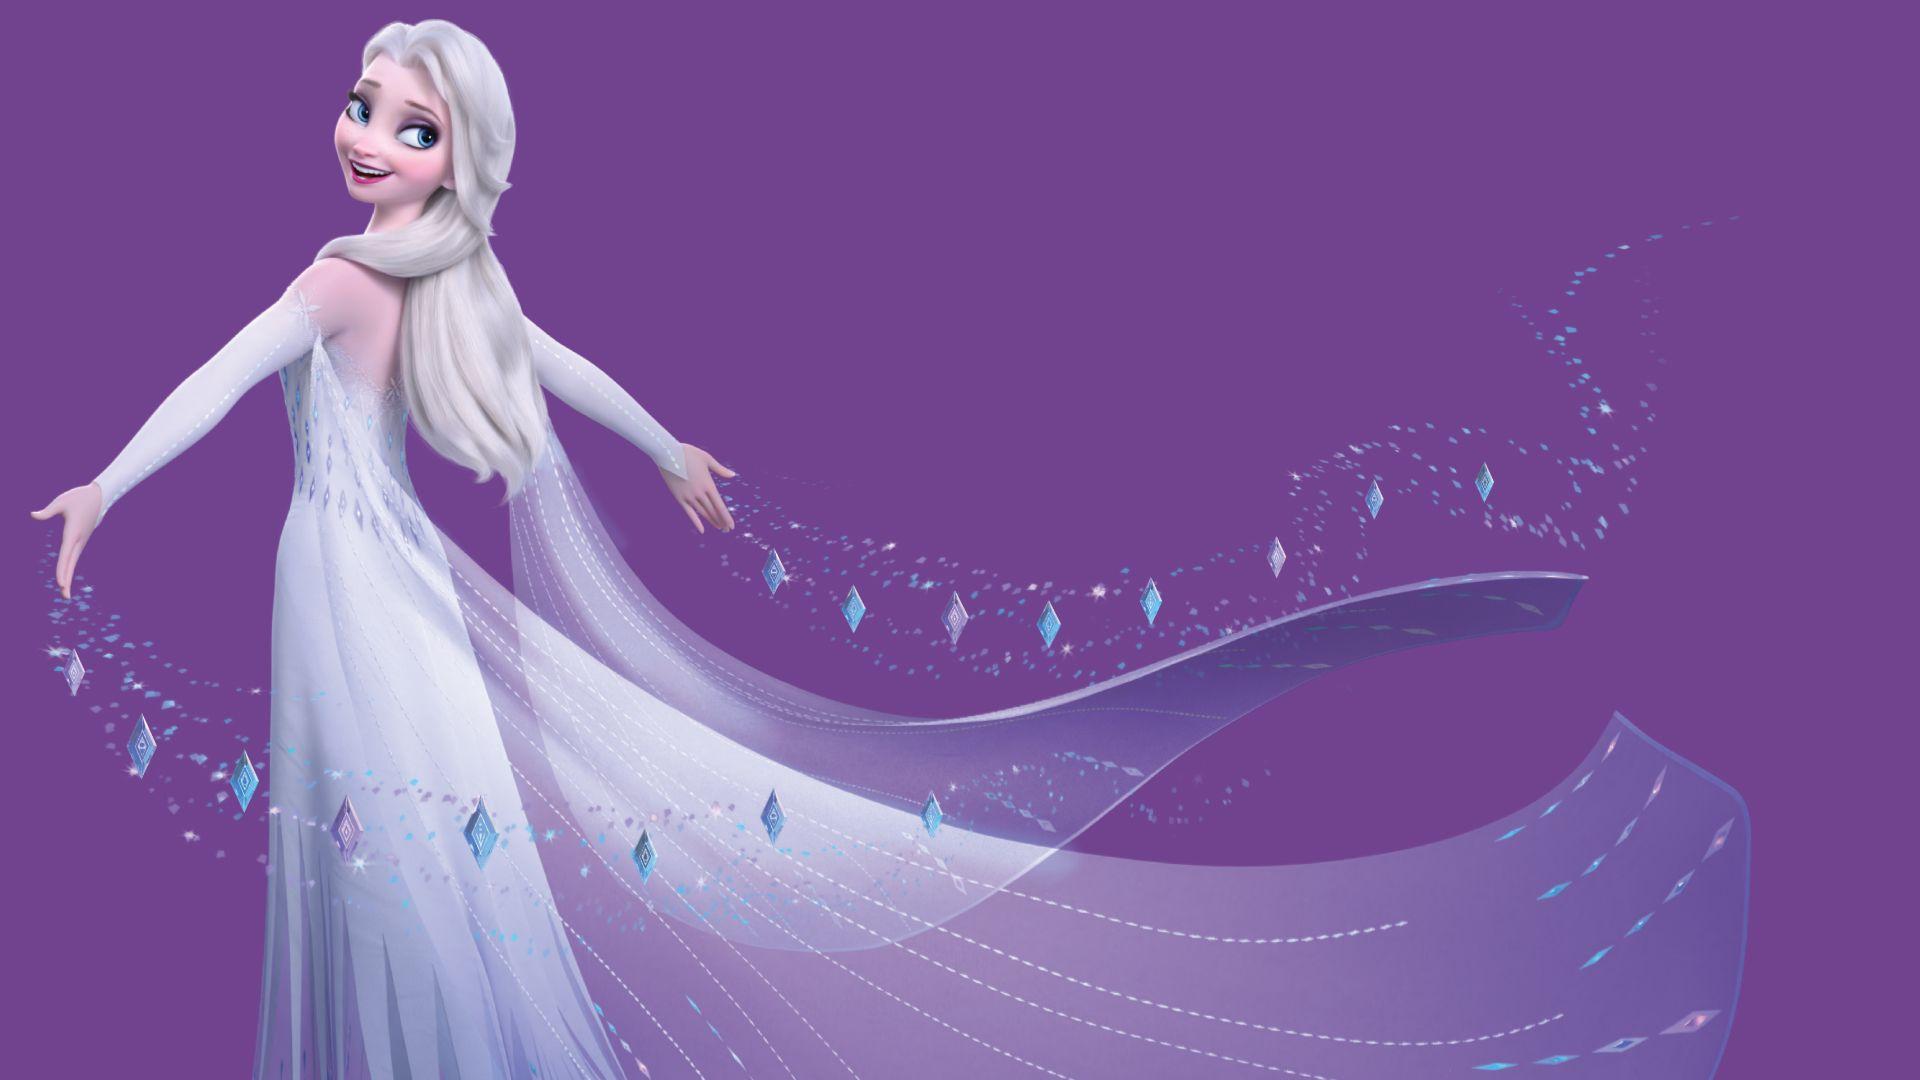 Hình nền HD 1920x1080 mới Frozen 2 với Elsa trong chiếc váy trắng và cô ấy